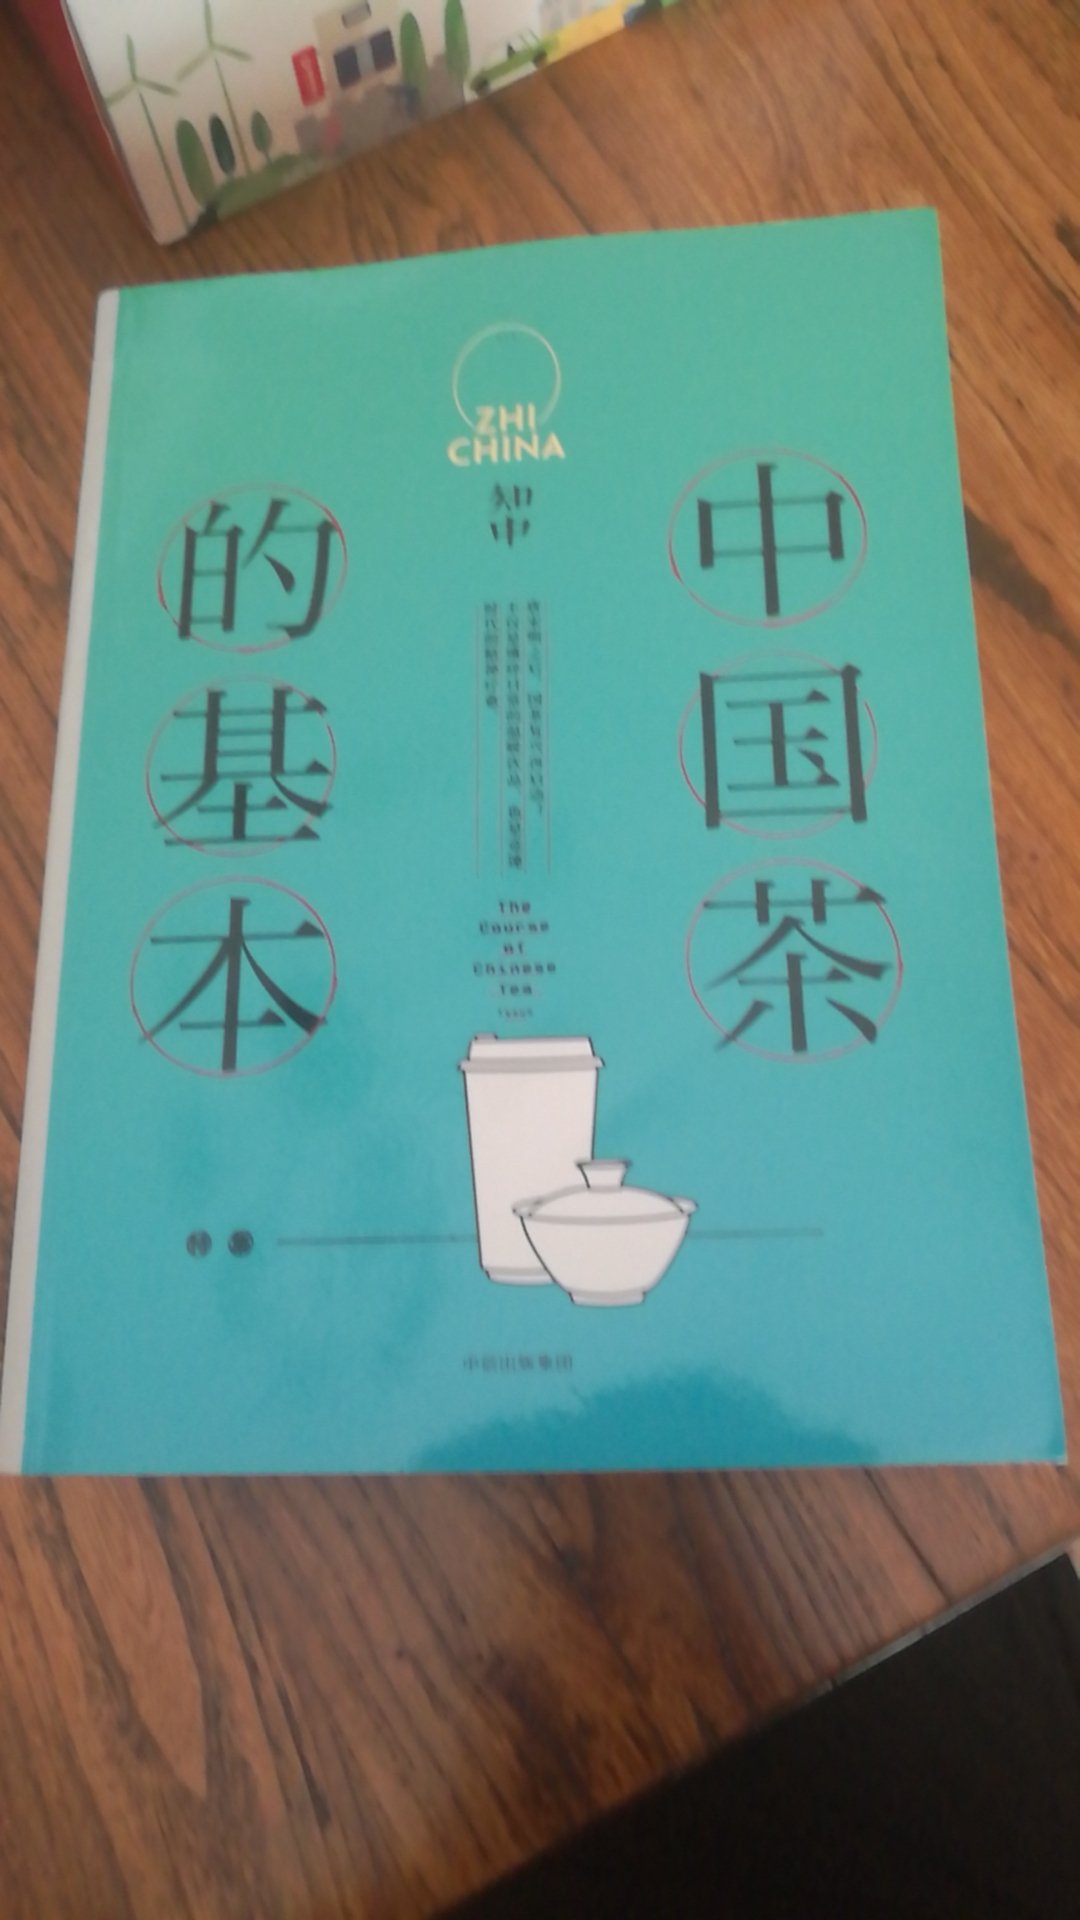 书包装完好，很值得看，一本介绍中国茶的好书，还有精彩的插图，点赞?